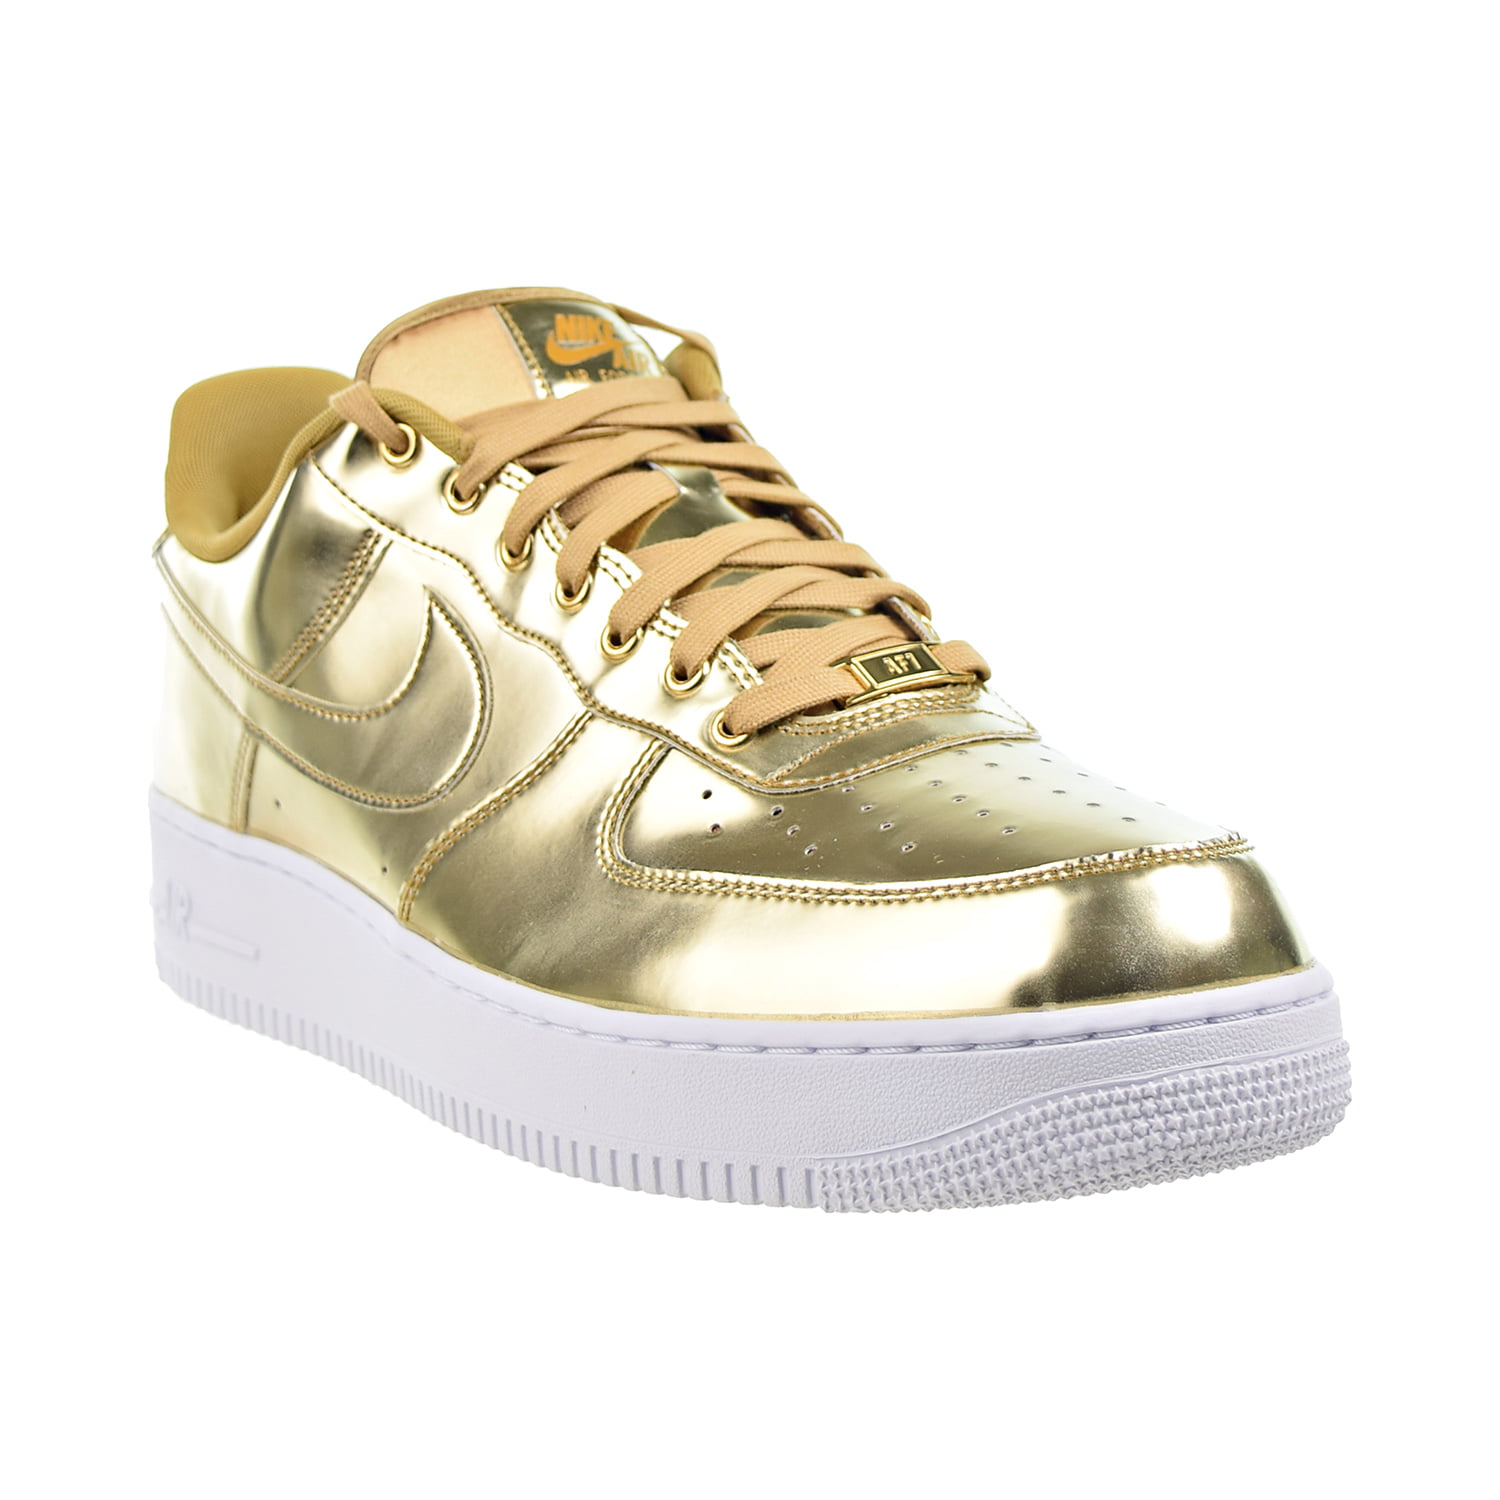 NikeLab Air Force 1 High 'Metallic Gold' - Nike - 823297 700